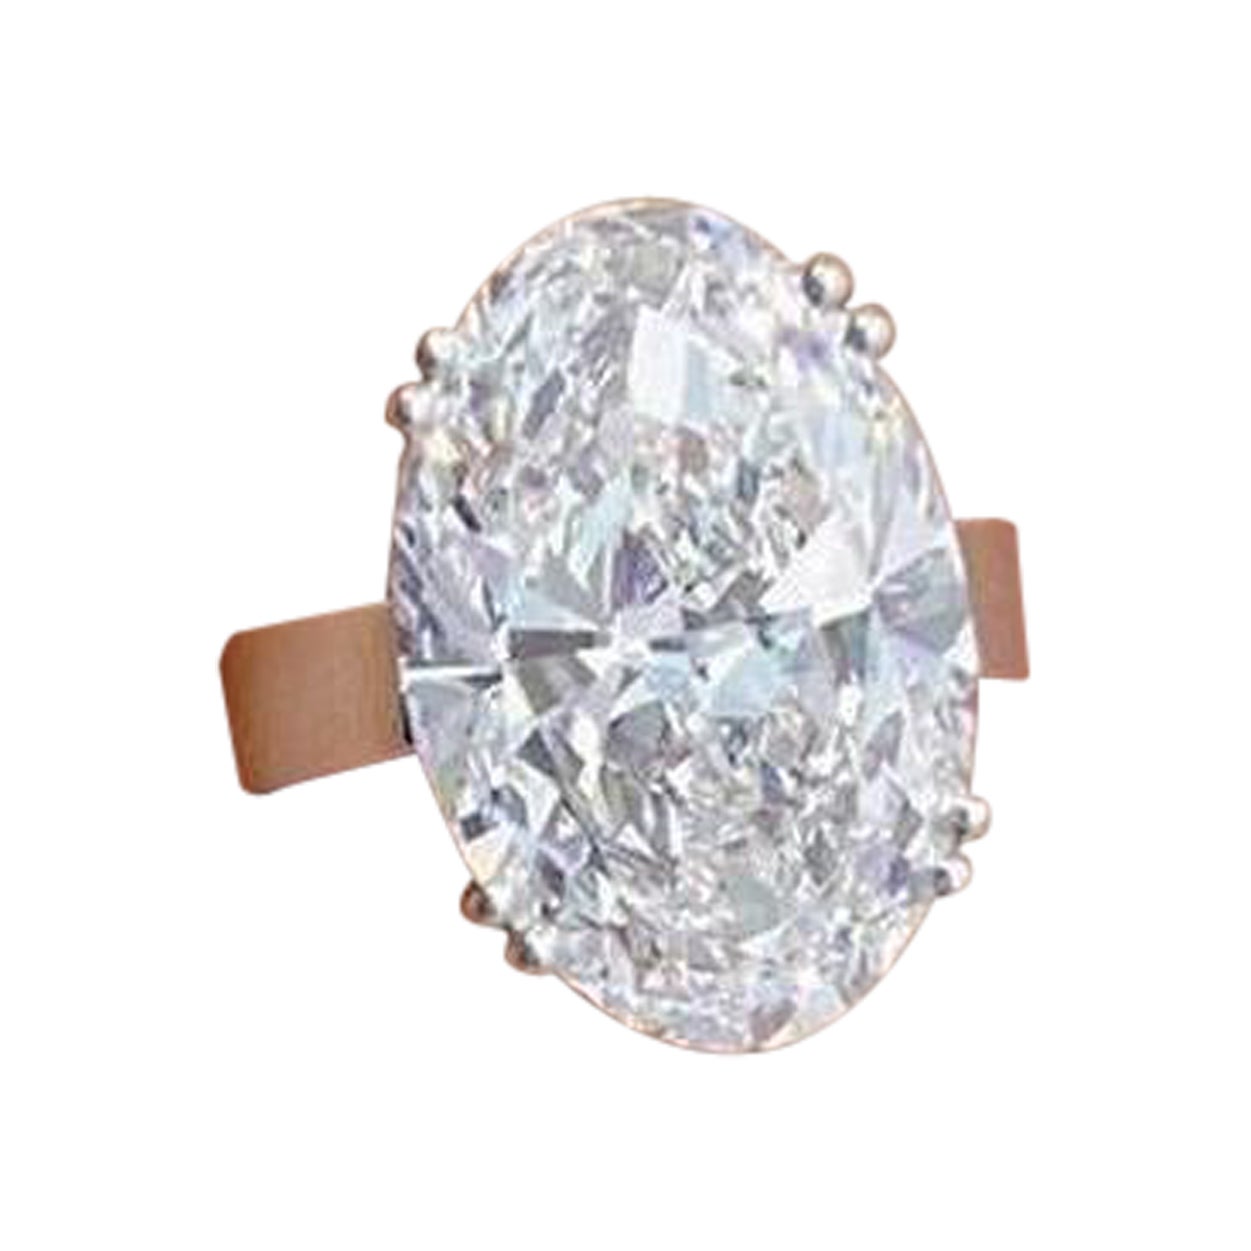 Voici une bague de fiançailles d'une beauté extraordinaire, ornée d'un diamant de 6 carats certifié par le GIA. La pierre centrale, certifiée par le GIA, est un diamant de qualité rare pesant 6 carats, avec un grade de couleur E et une clarté VS2,